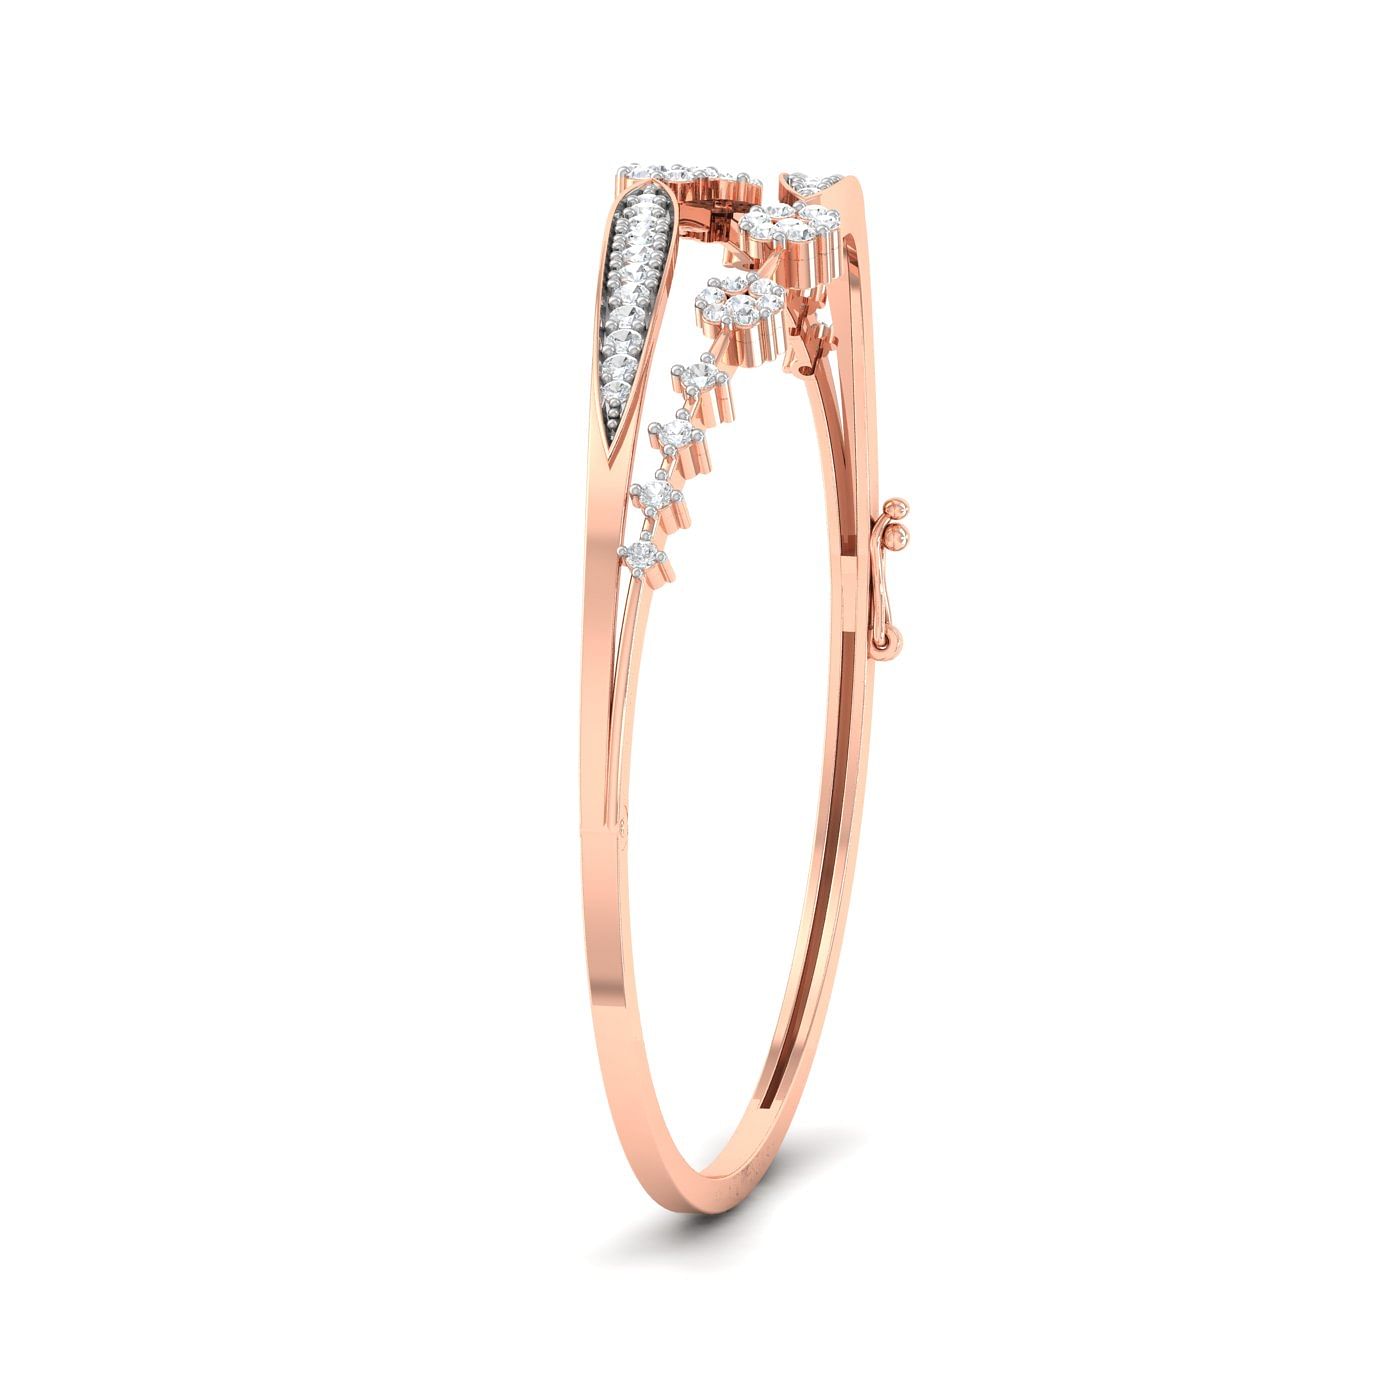 rose gold Flew Diamond Bracelet for anniversary gift